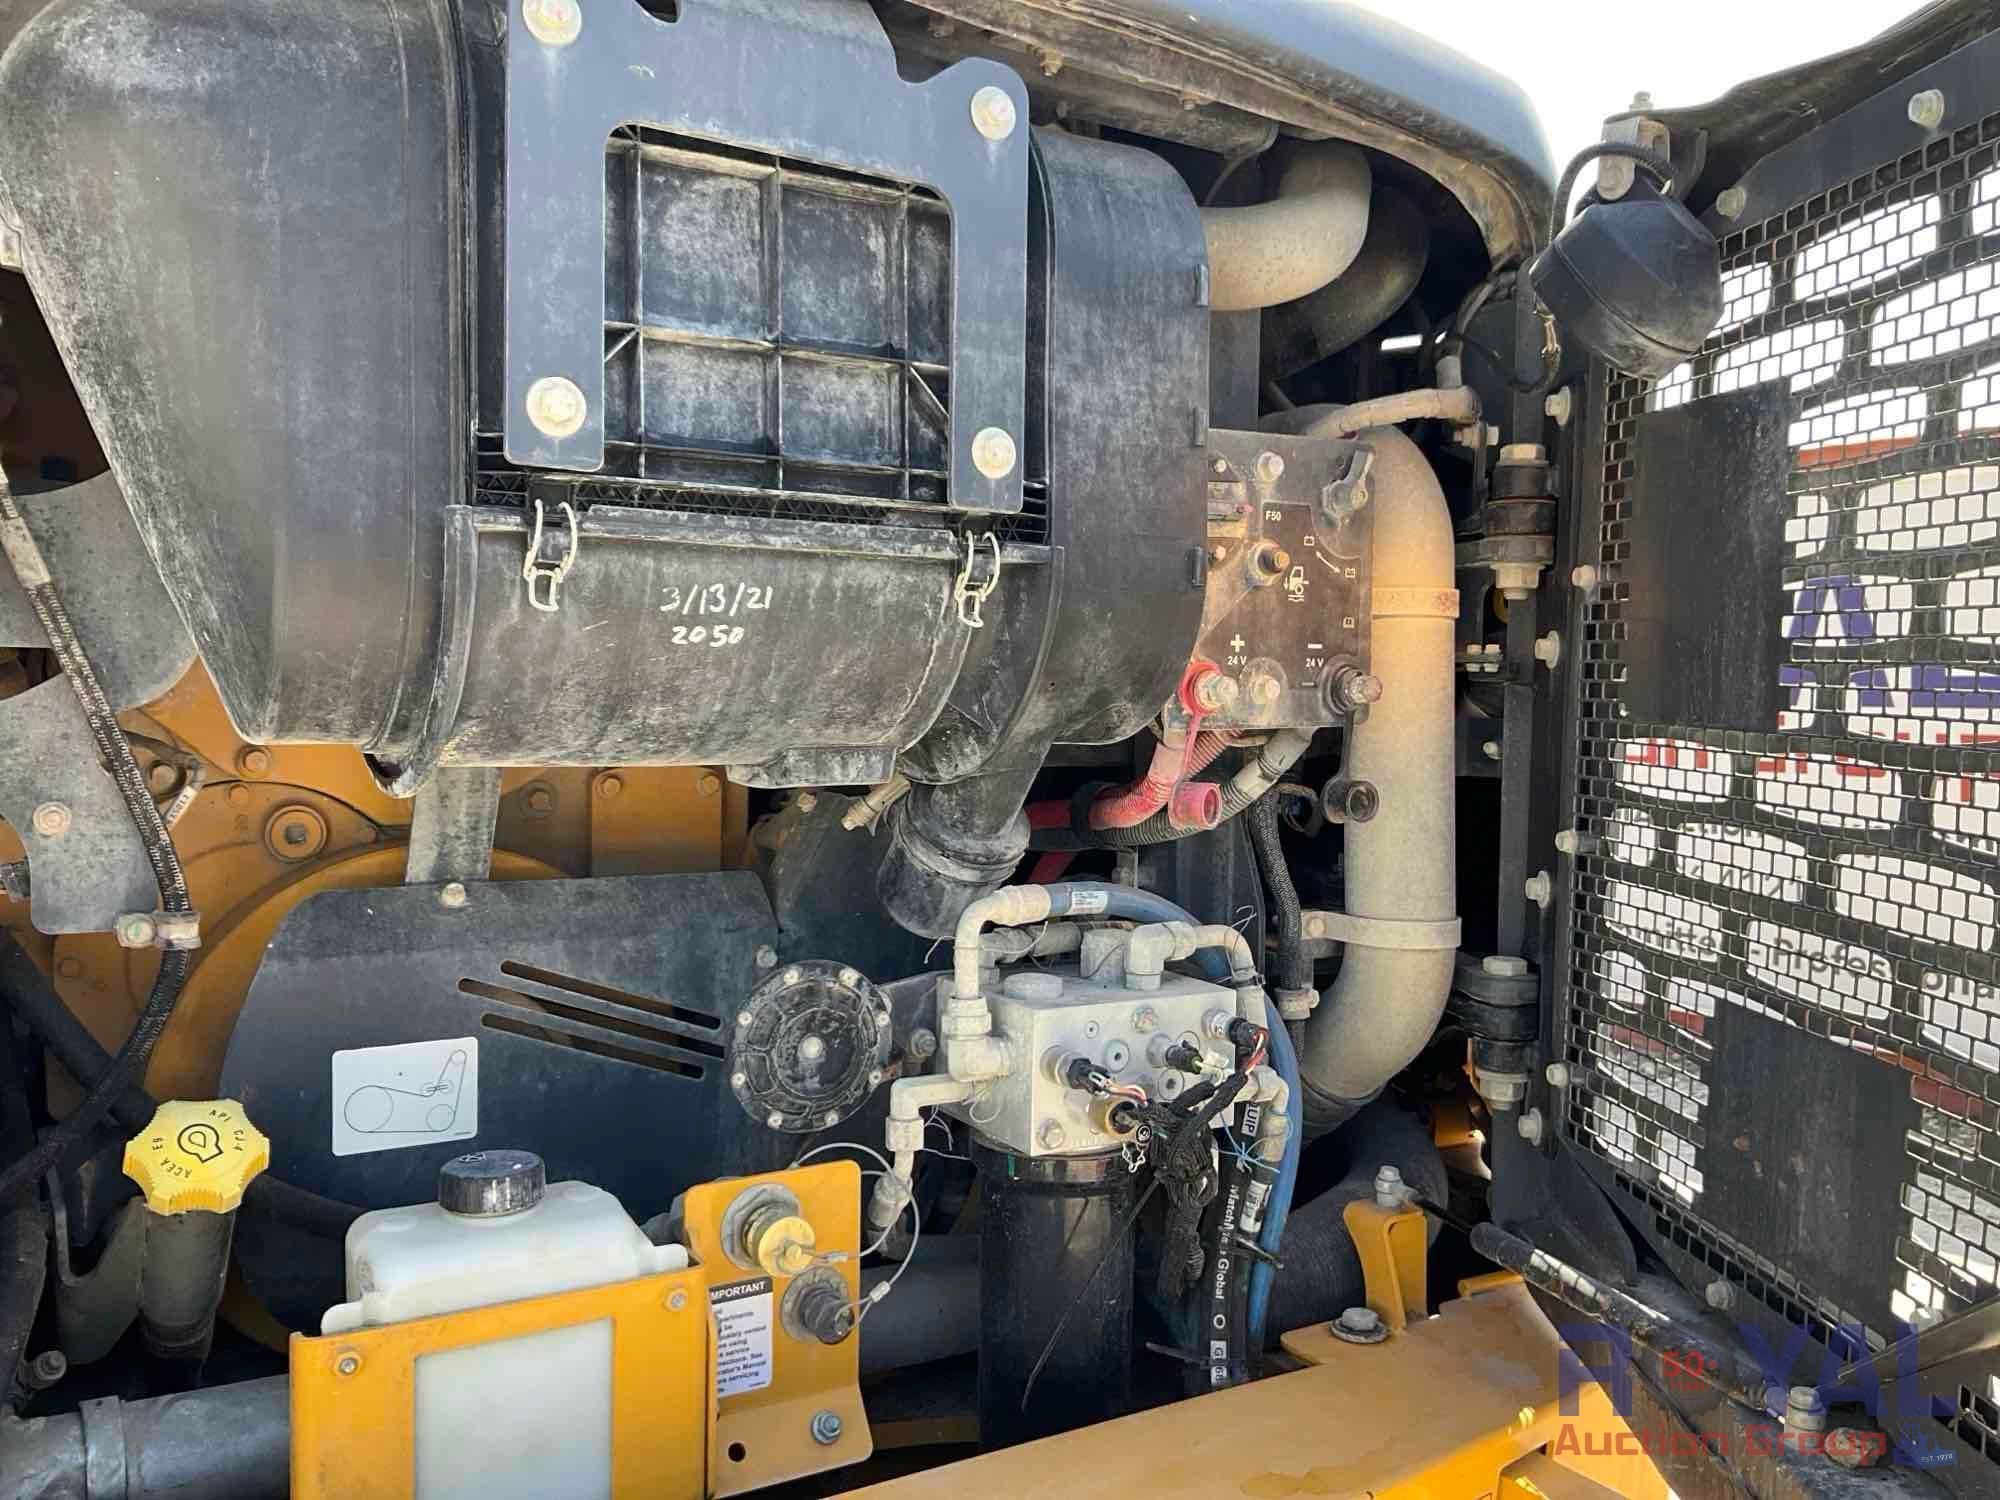 2021 John Deere 410E 40 Ton Articulated Off Road Dump truck